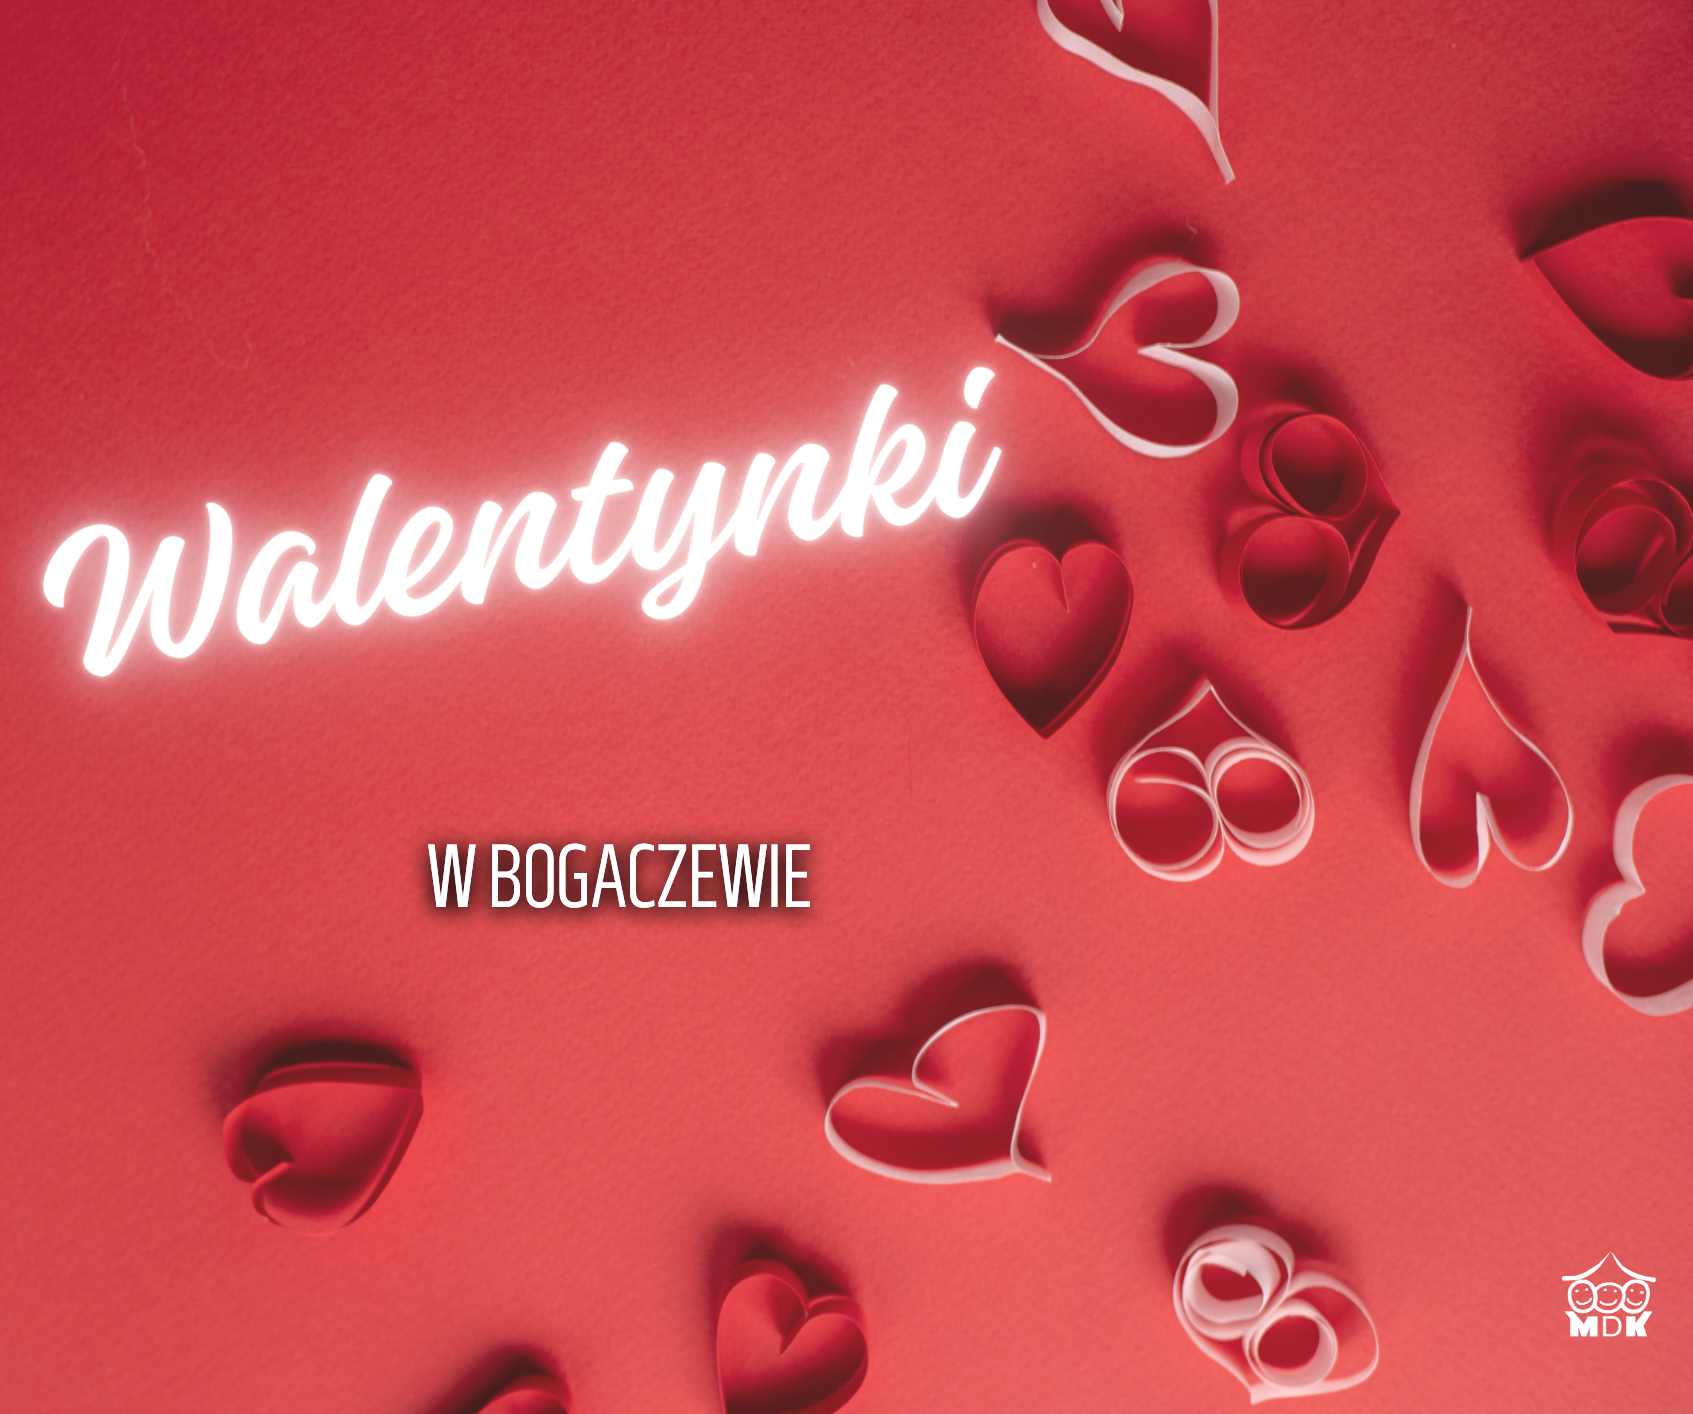 You are currently viewing Walentynki w Bogaczewie